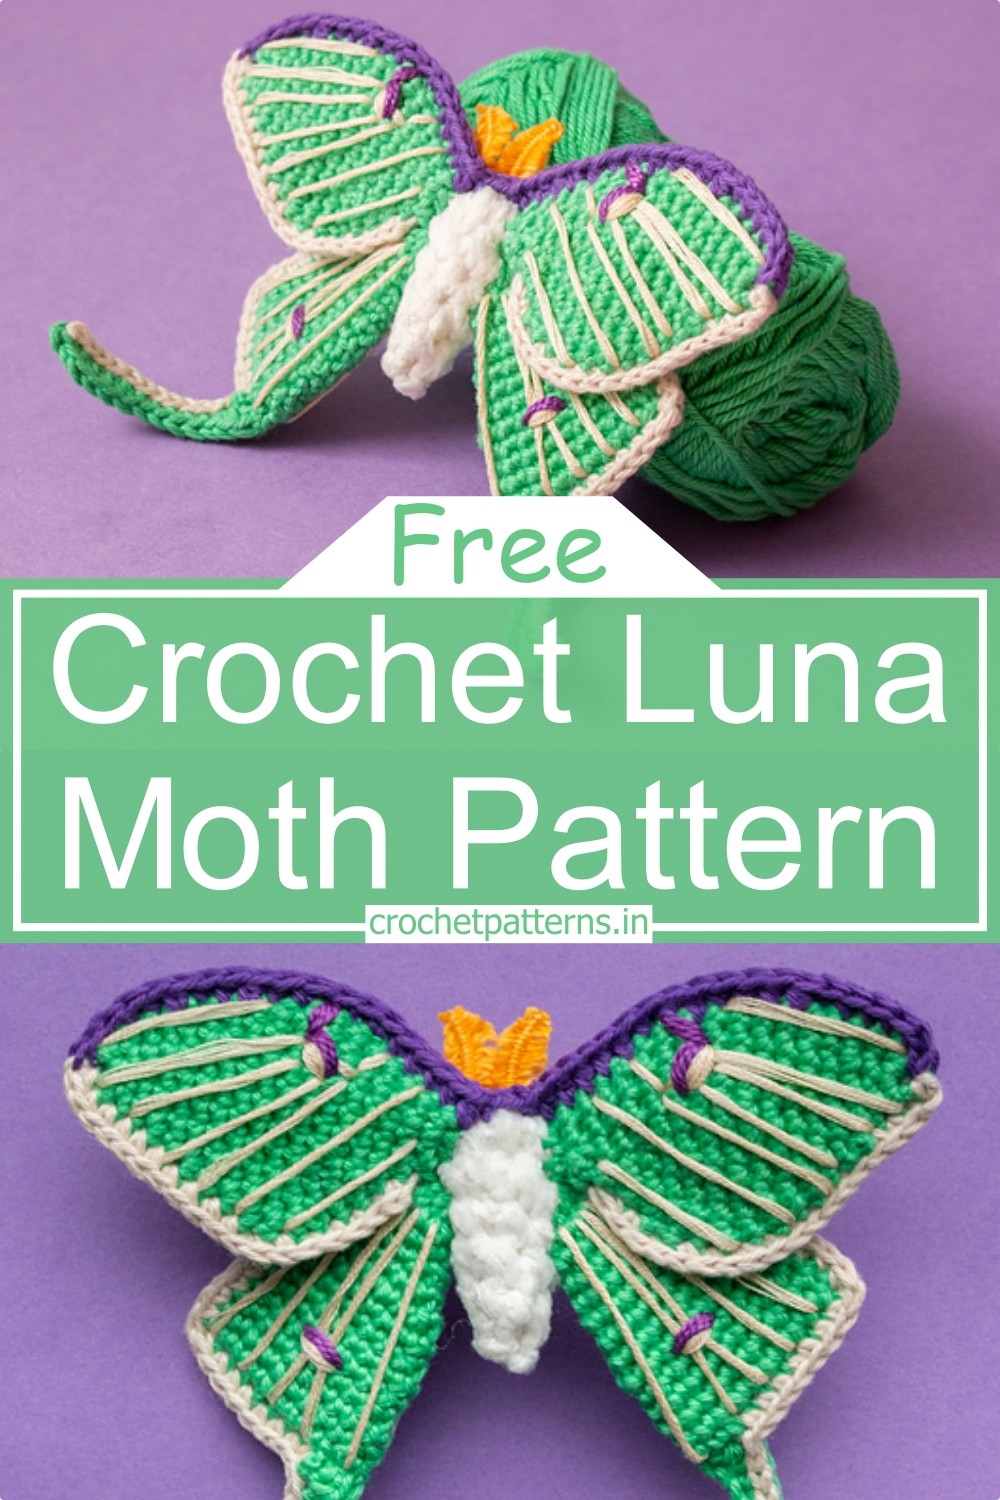 Crochet Luna Moth Pattern